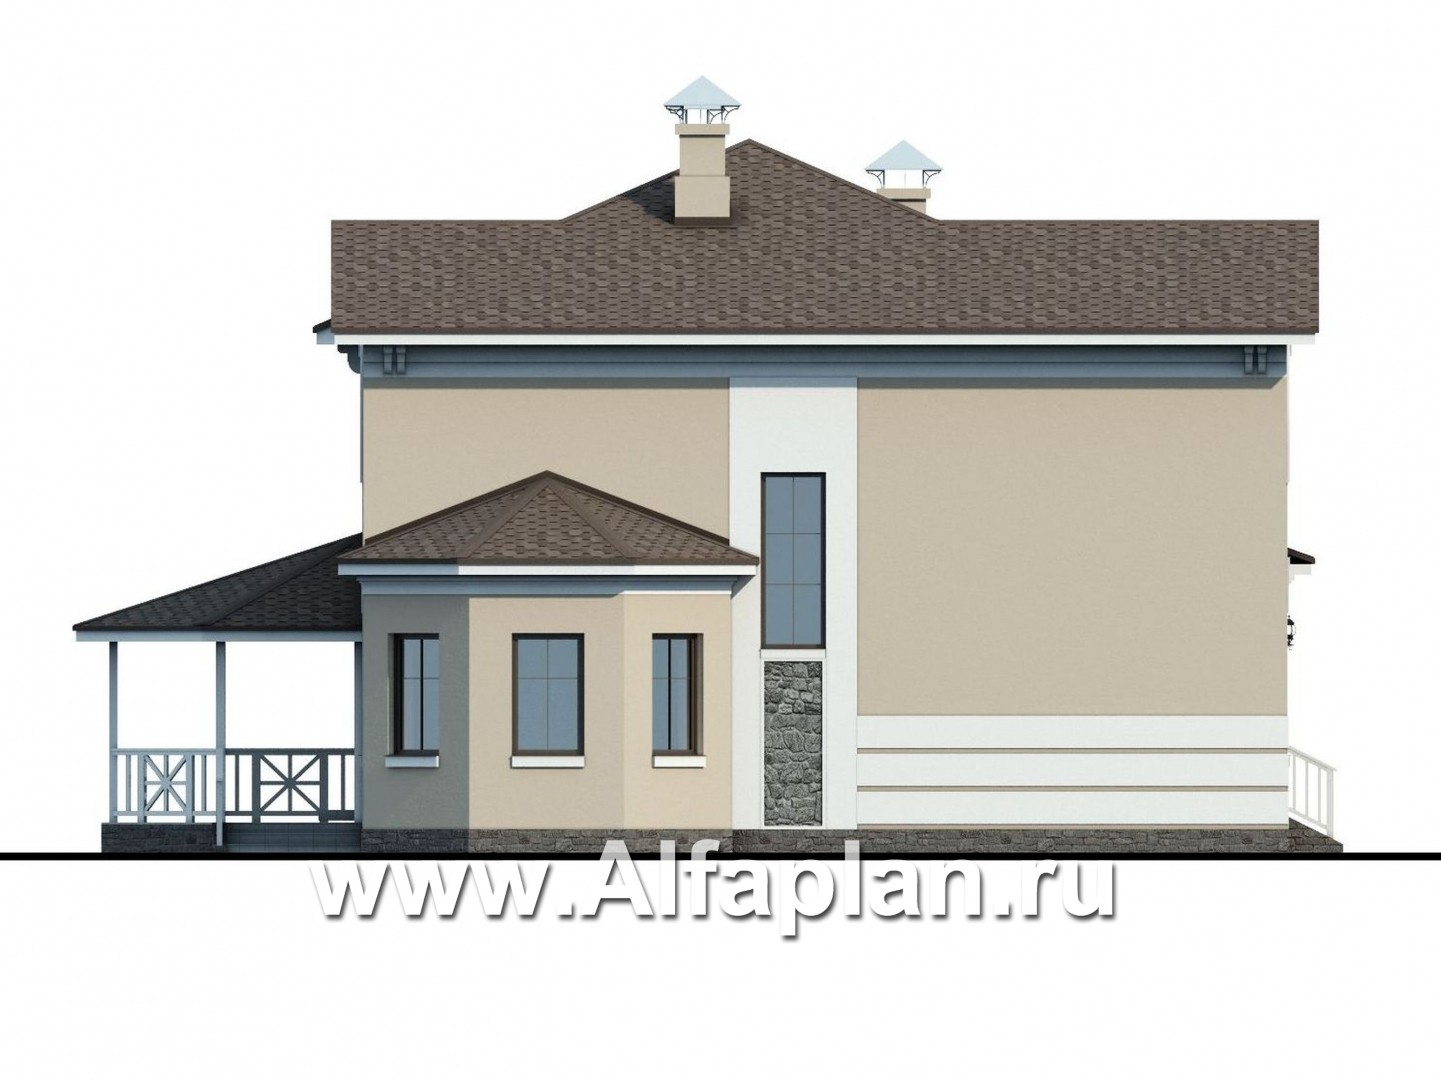 «Белоостров» - красивый проект двухэтажного дома, планировка с кабинетом на 1 эт, терраса, эркер в столовой - фасад дома